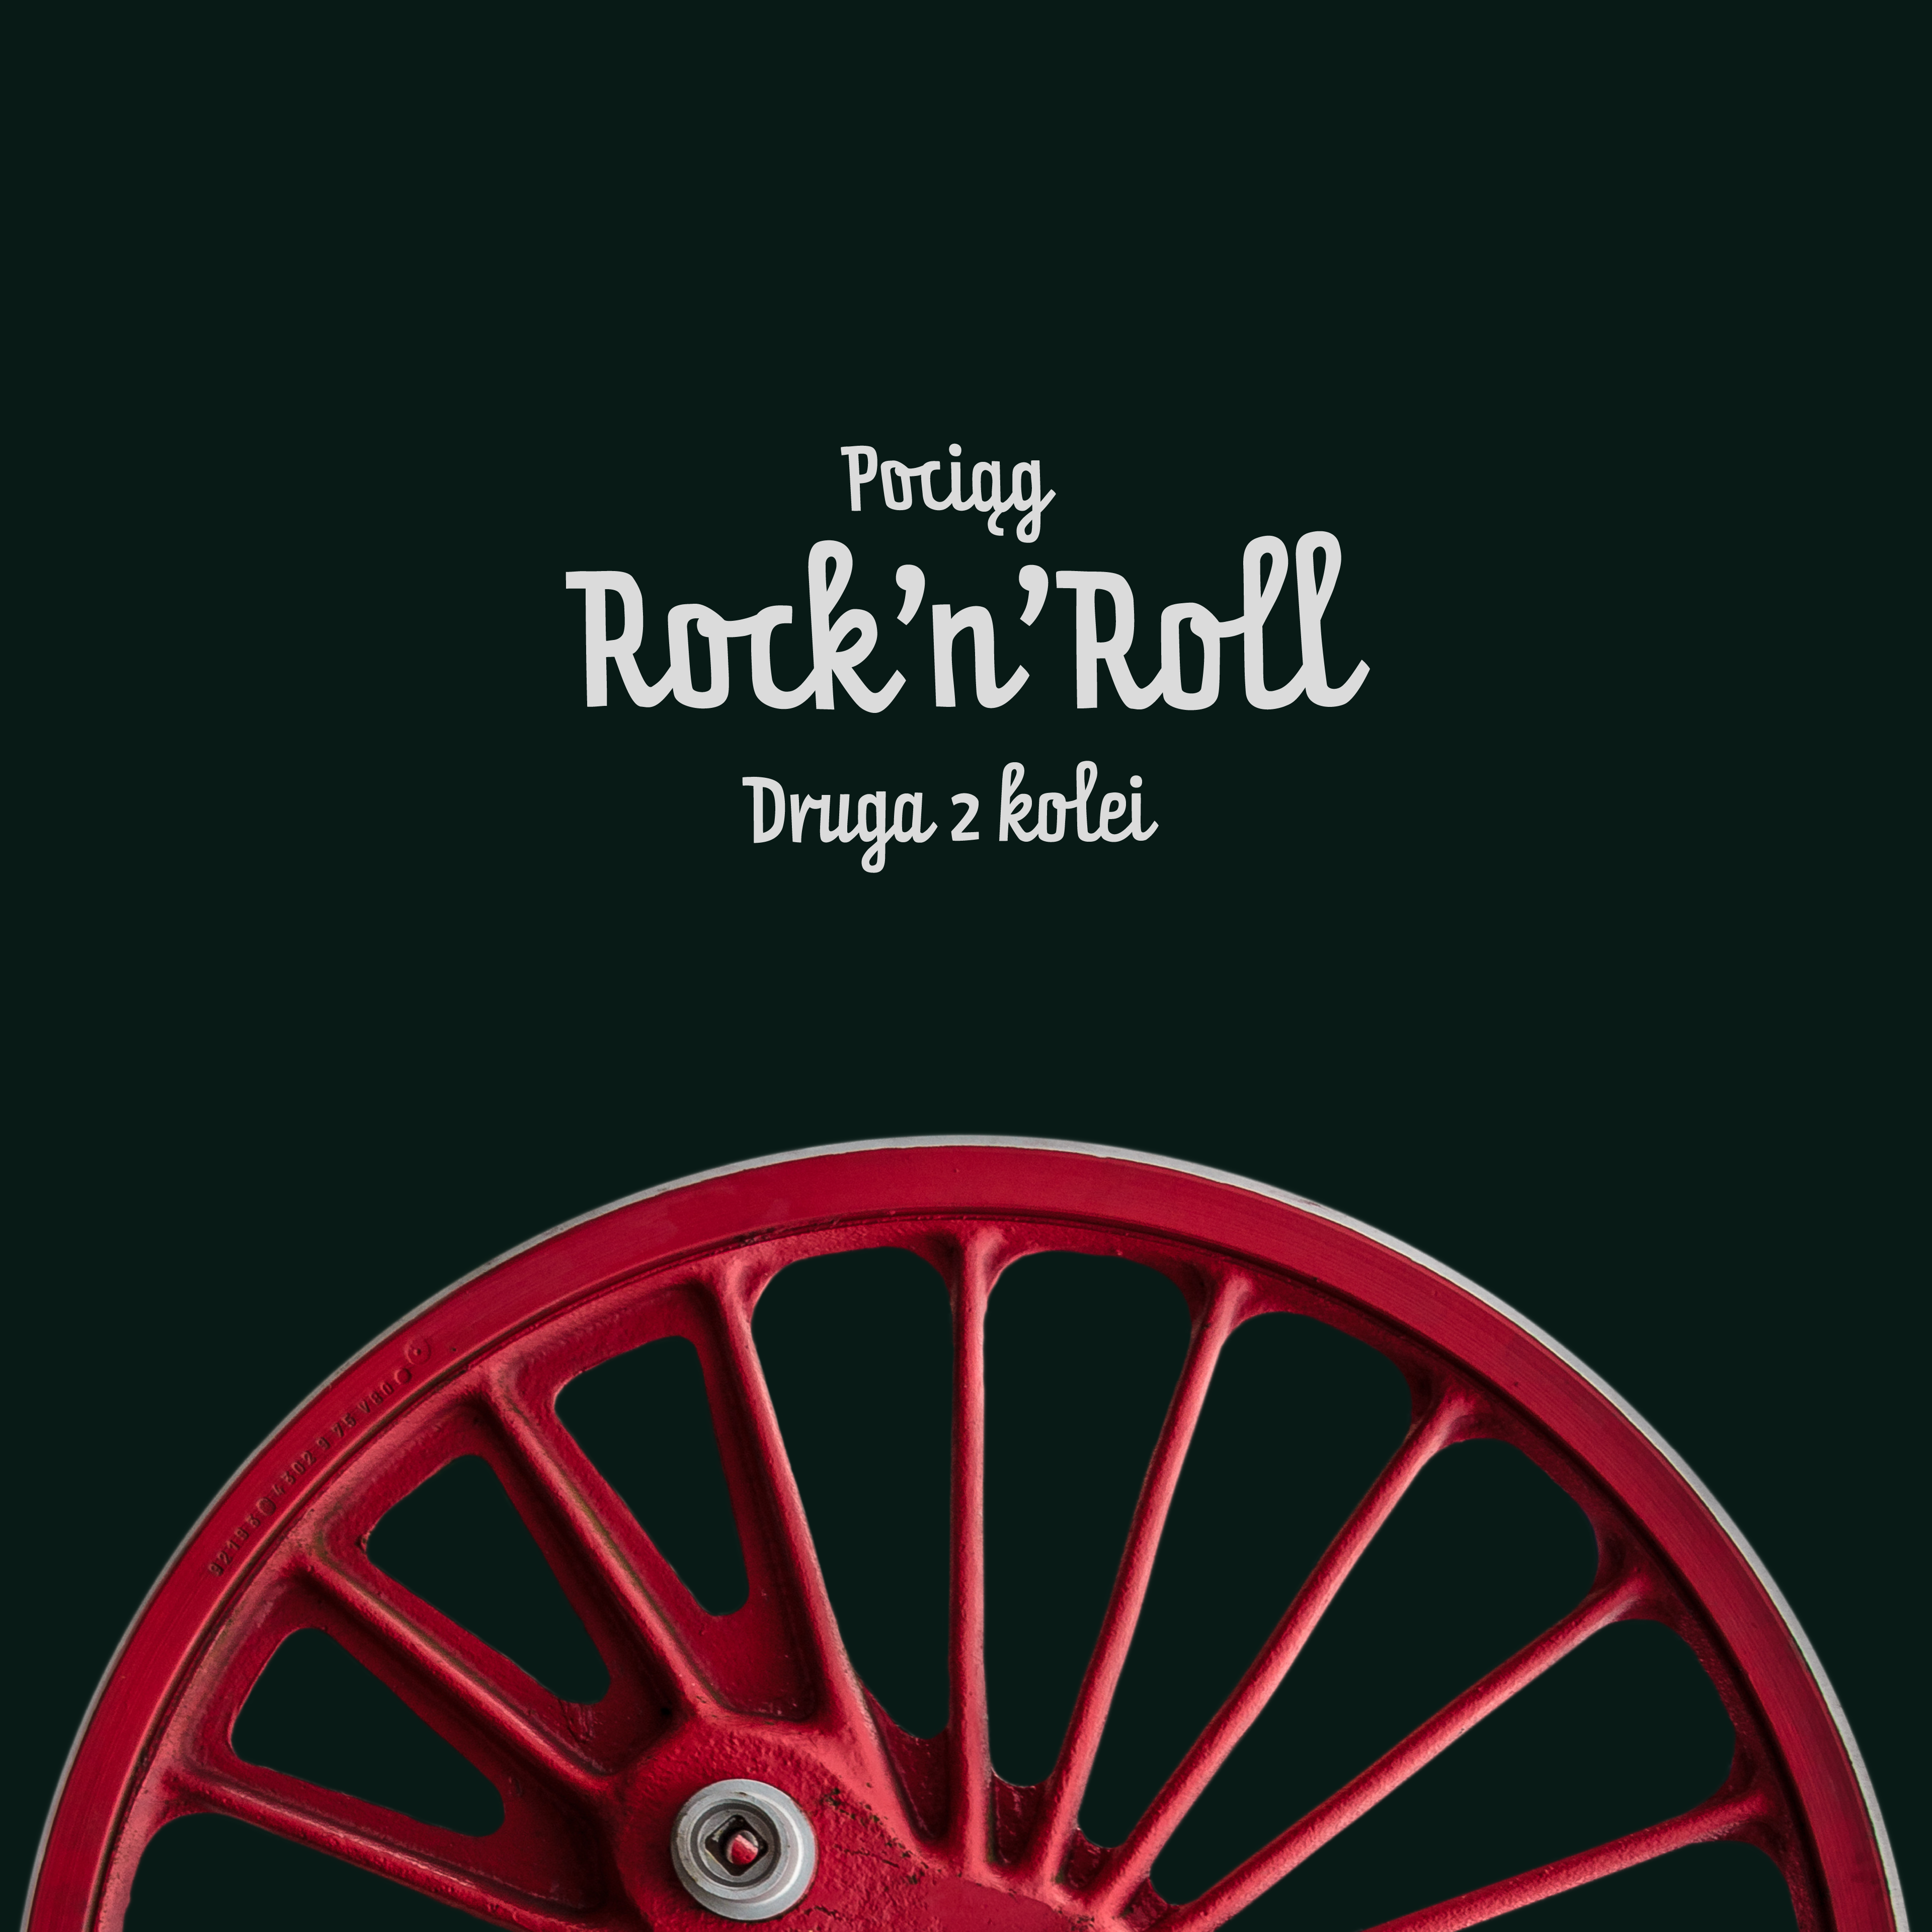  Pociąg Rock’n’roll: Druga z kolei Na zdjęciu okładka nowej płyty zespołu